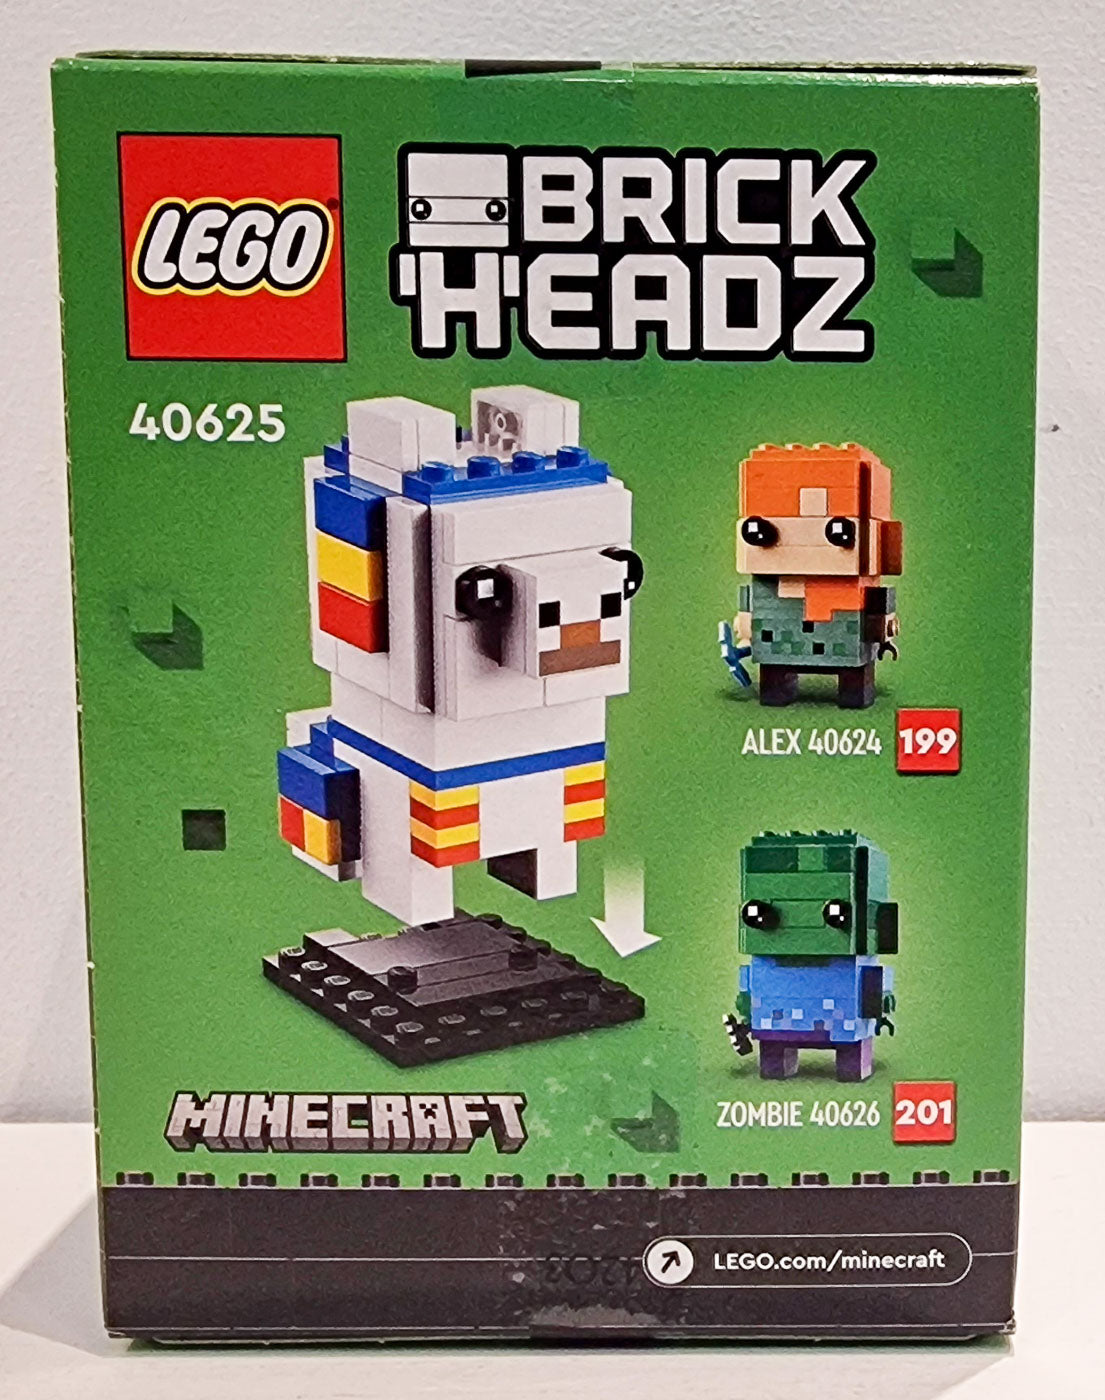 LEGO 40625 Brickheadz Llama